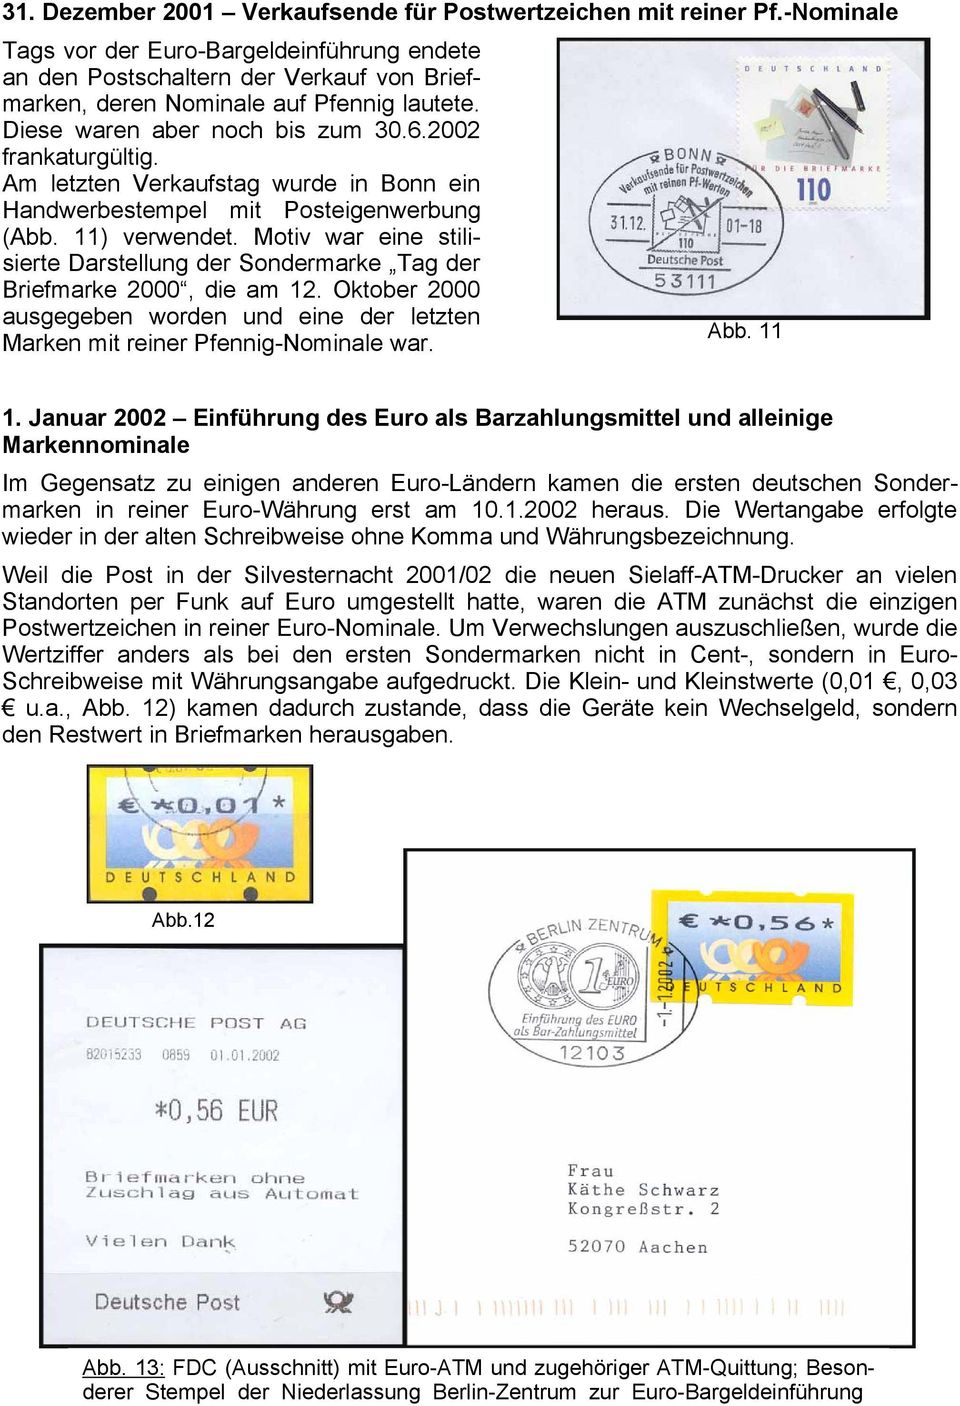 Am letzten Verkaufstag wurde in Bonn ein Handwerbestempel mit Posteigenwerbung (Abb. 11) verwendet. Motiv war eine stilisierte Darstellung der Sondermarke Tag der Briefmarke 2000, die am 12.